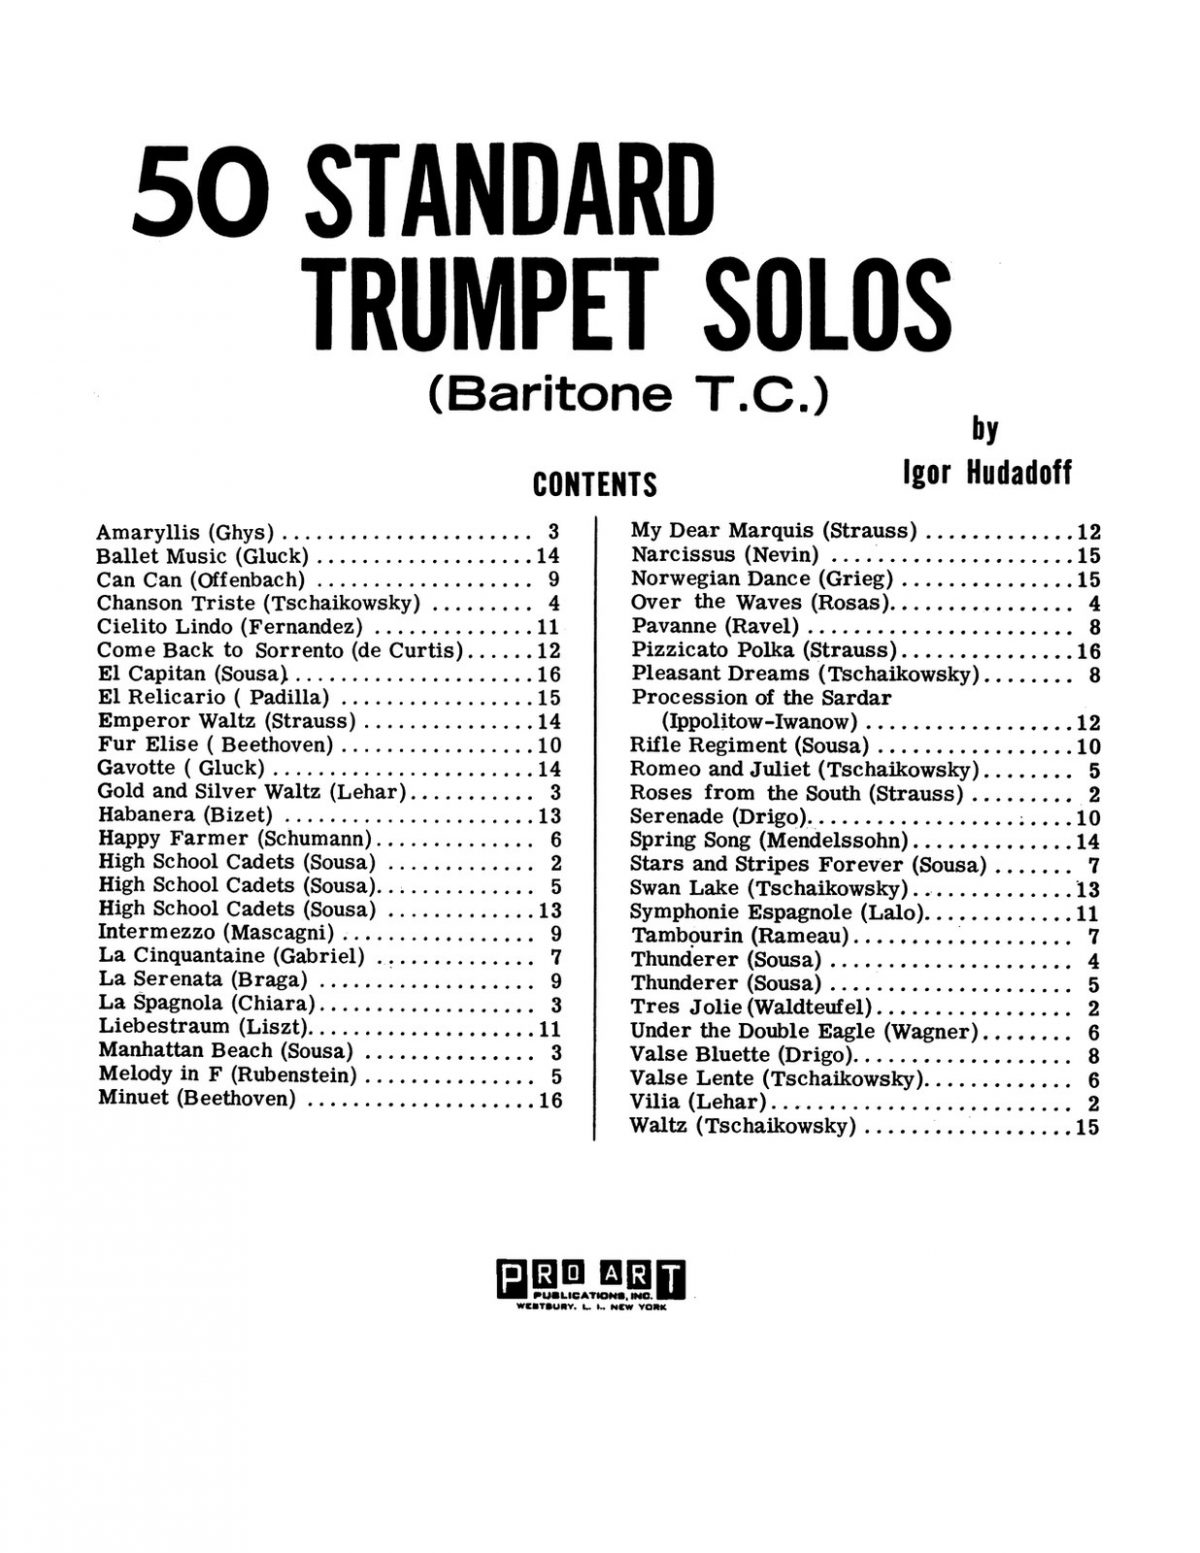 standar trumpet repertoire